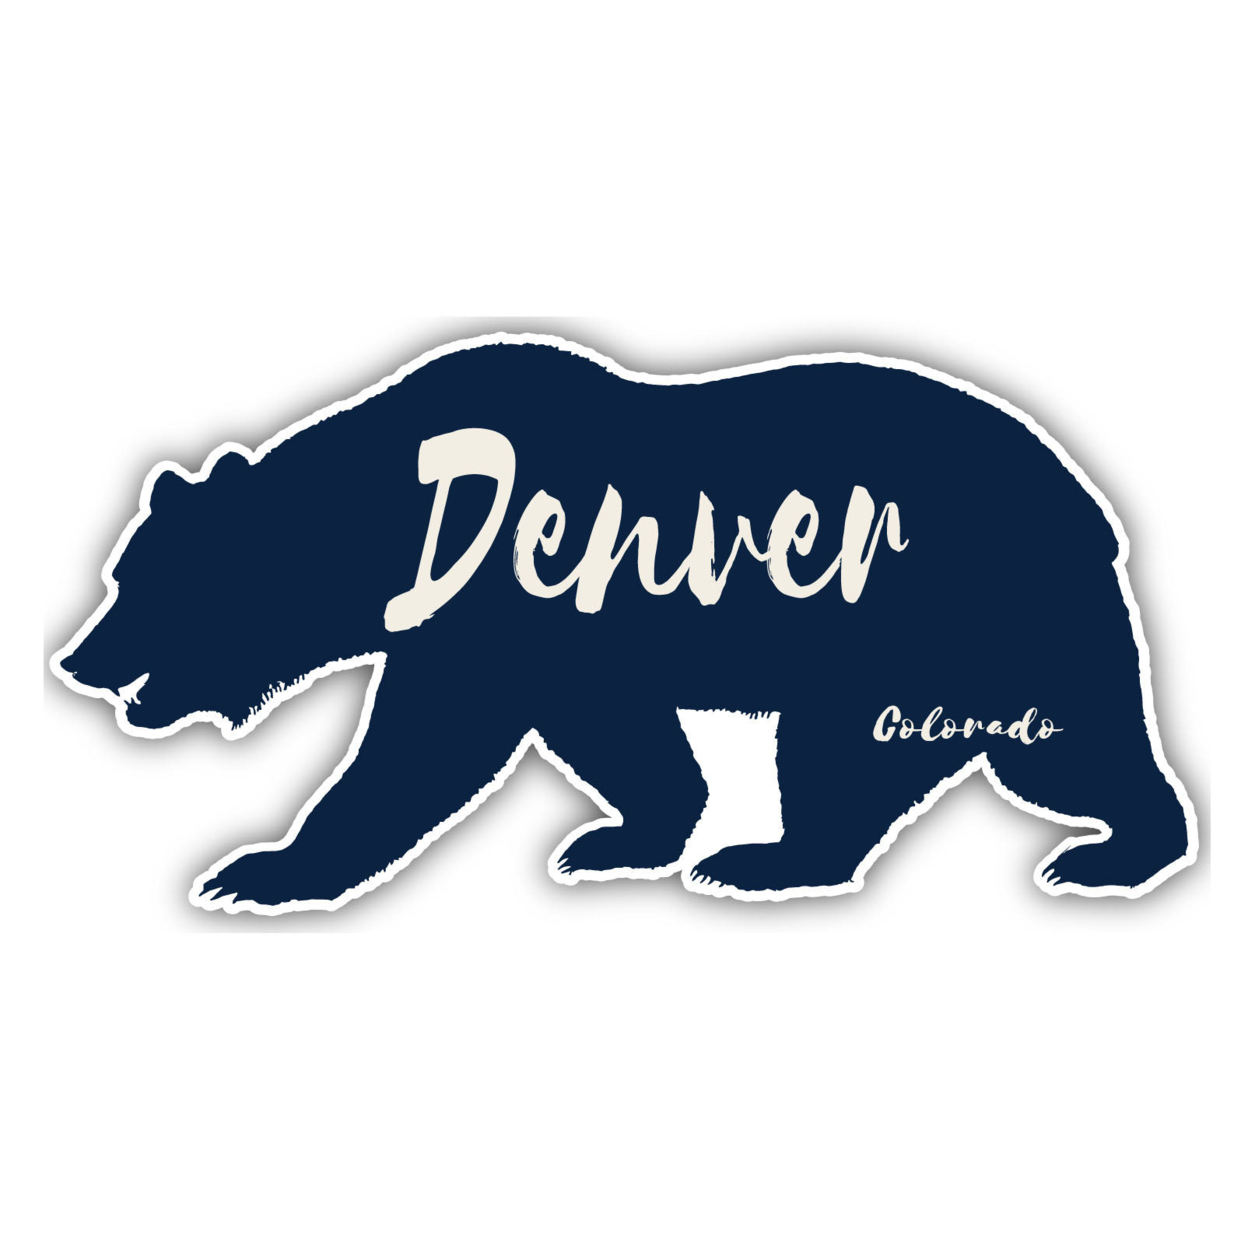 Denver Colorado Souvenir Decorative Stickers (Choose Theme And Size) - Single Unit, 12-Inch, Tent